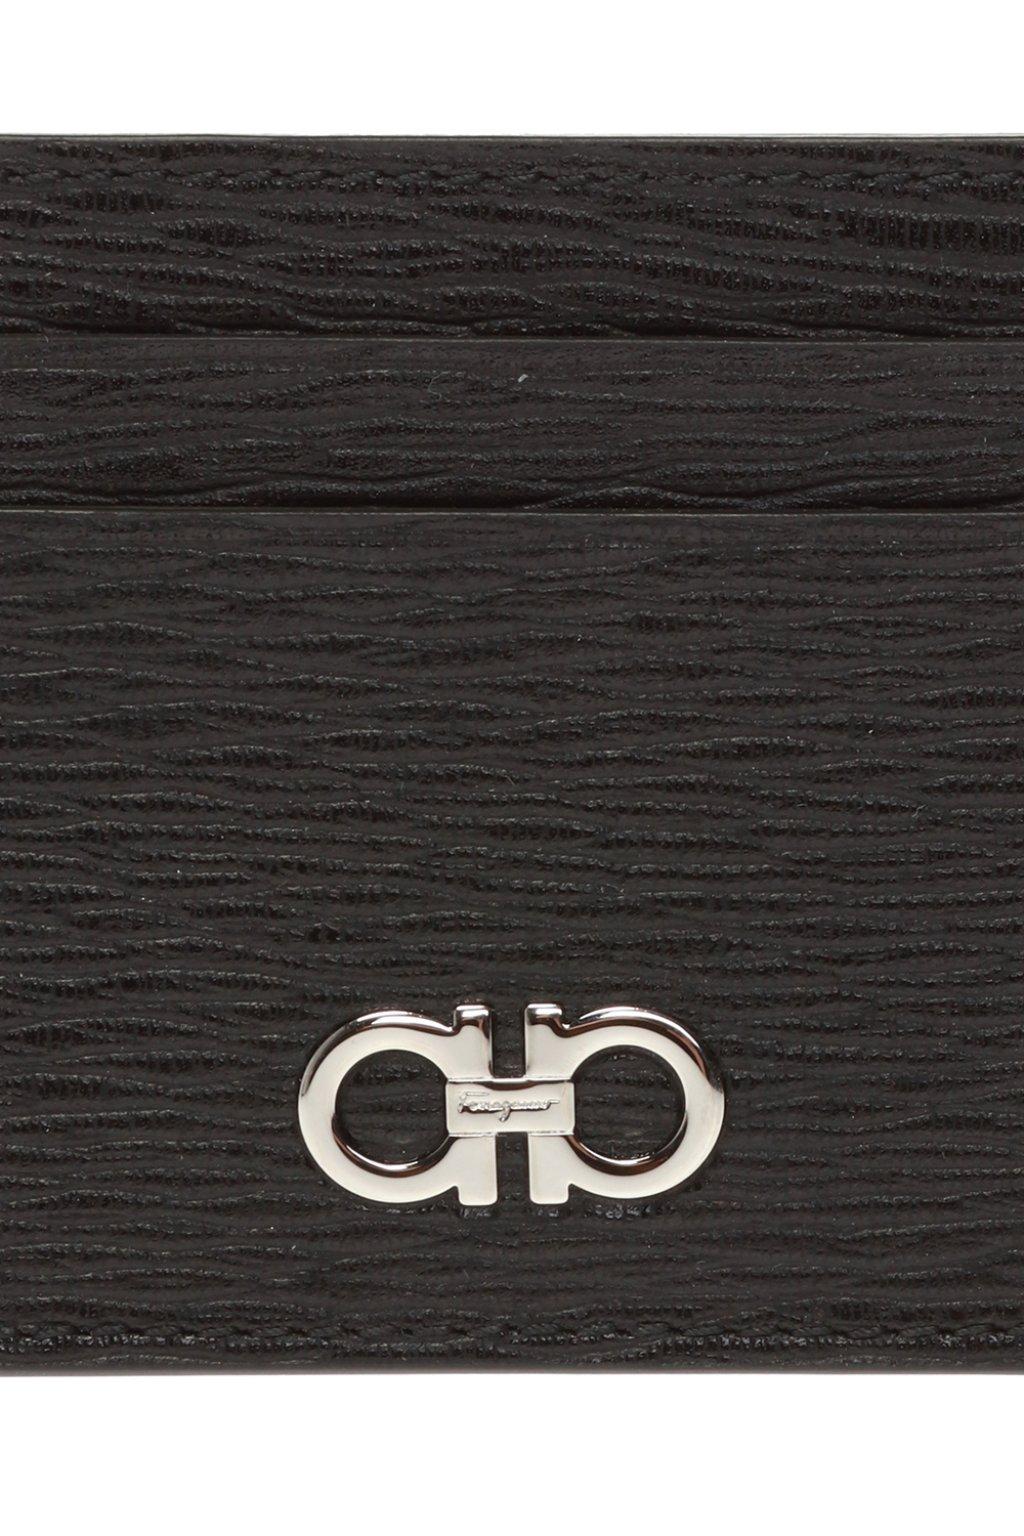 Ferragamo Leather Gancini Cardholder Wallet in Black for Men 